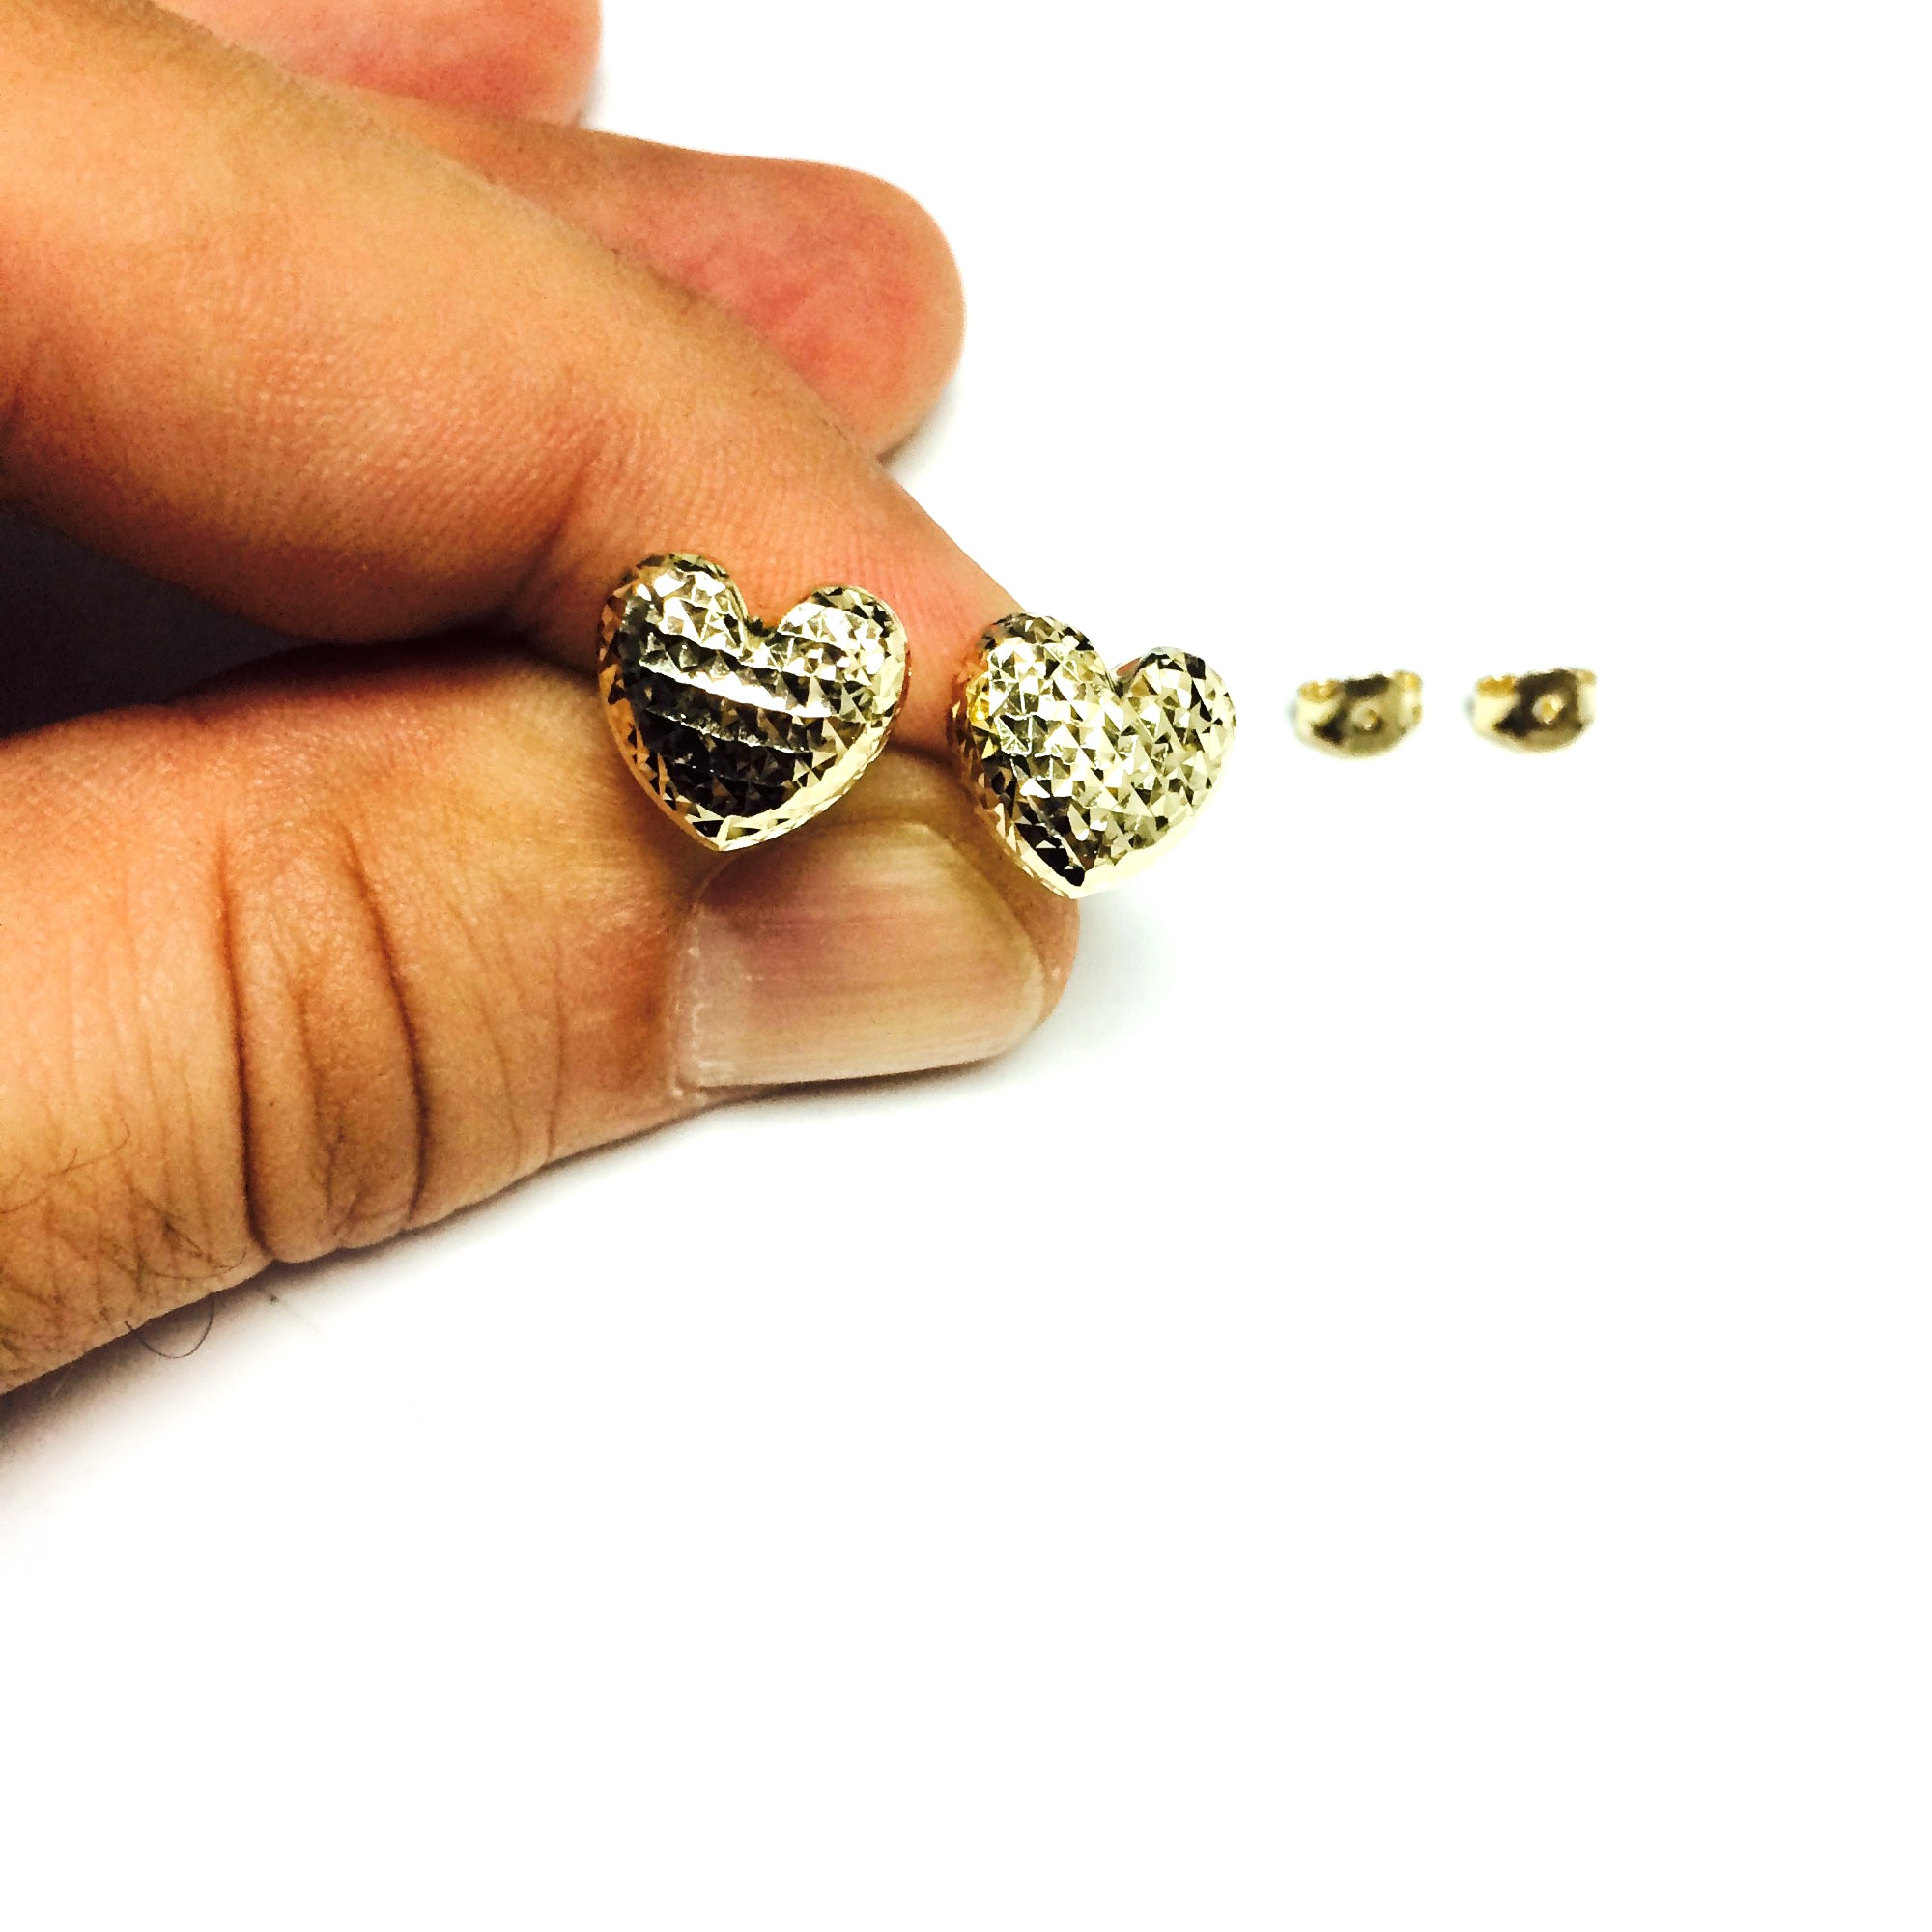 14k Gold Diamond Cut Puffy Heart Stud Earrings, 10 x 11mm